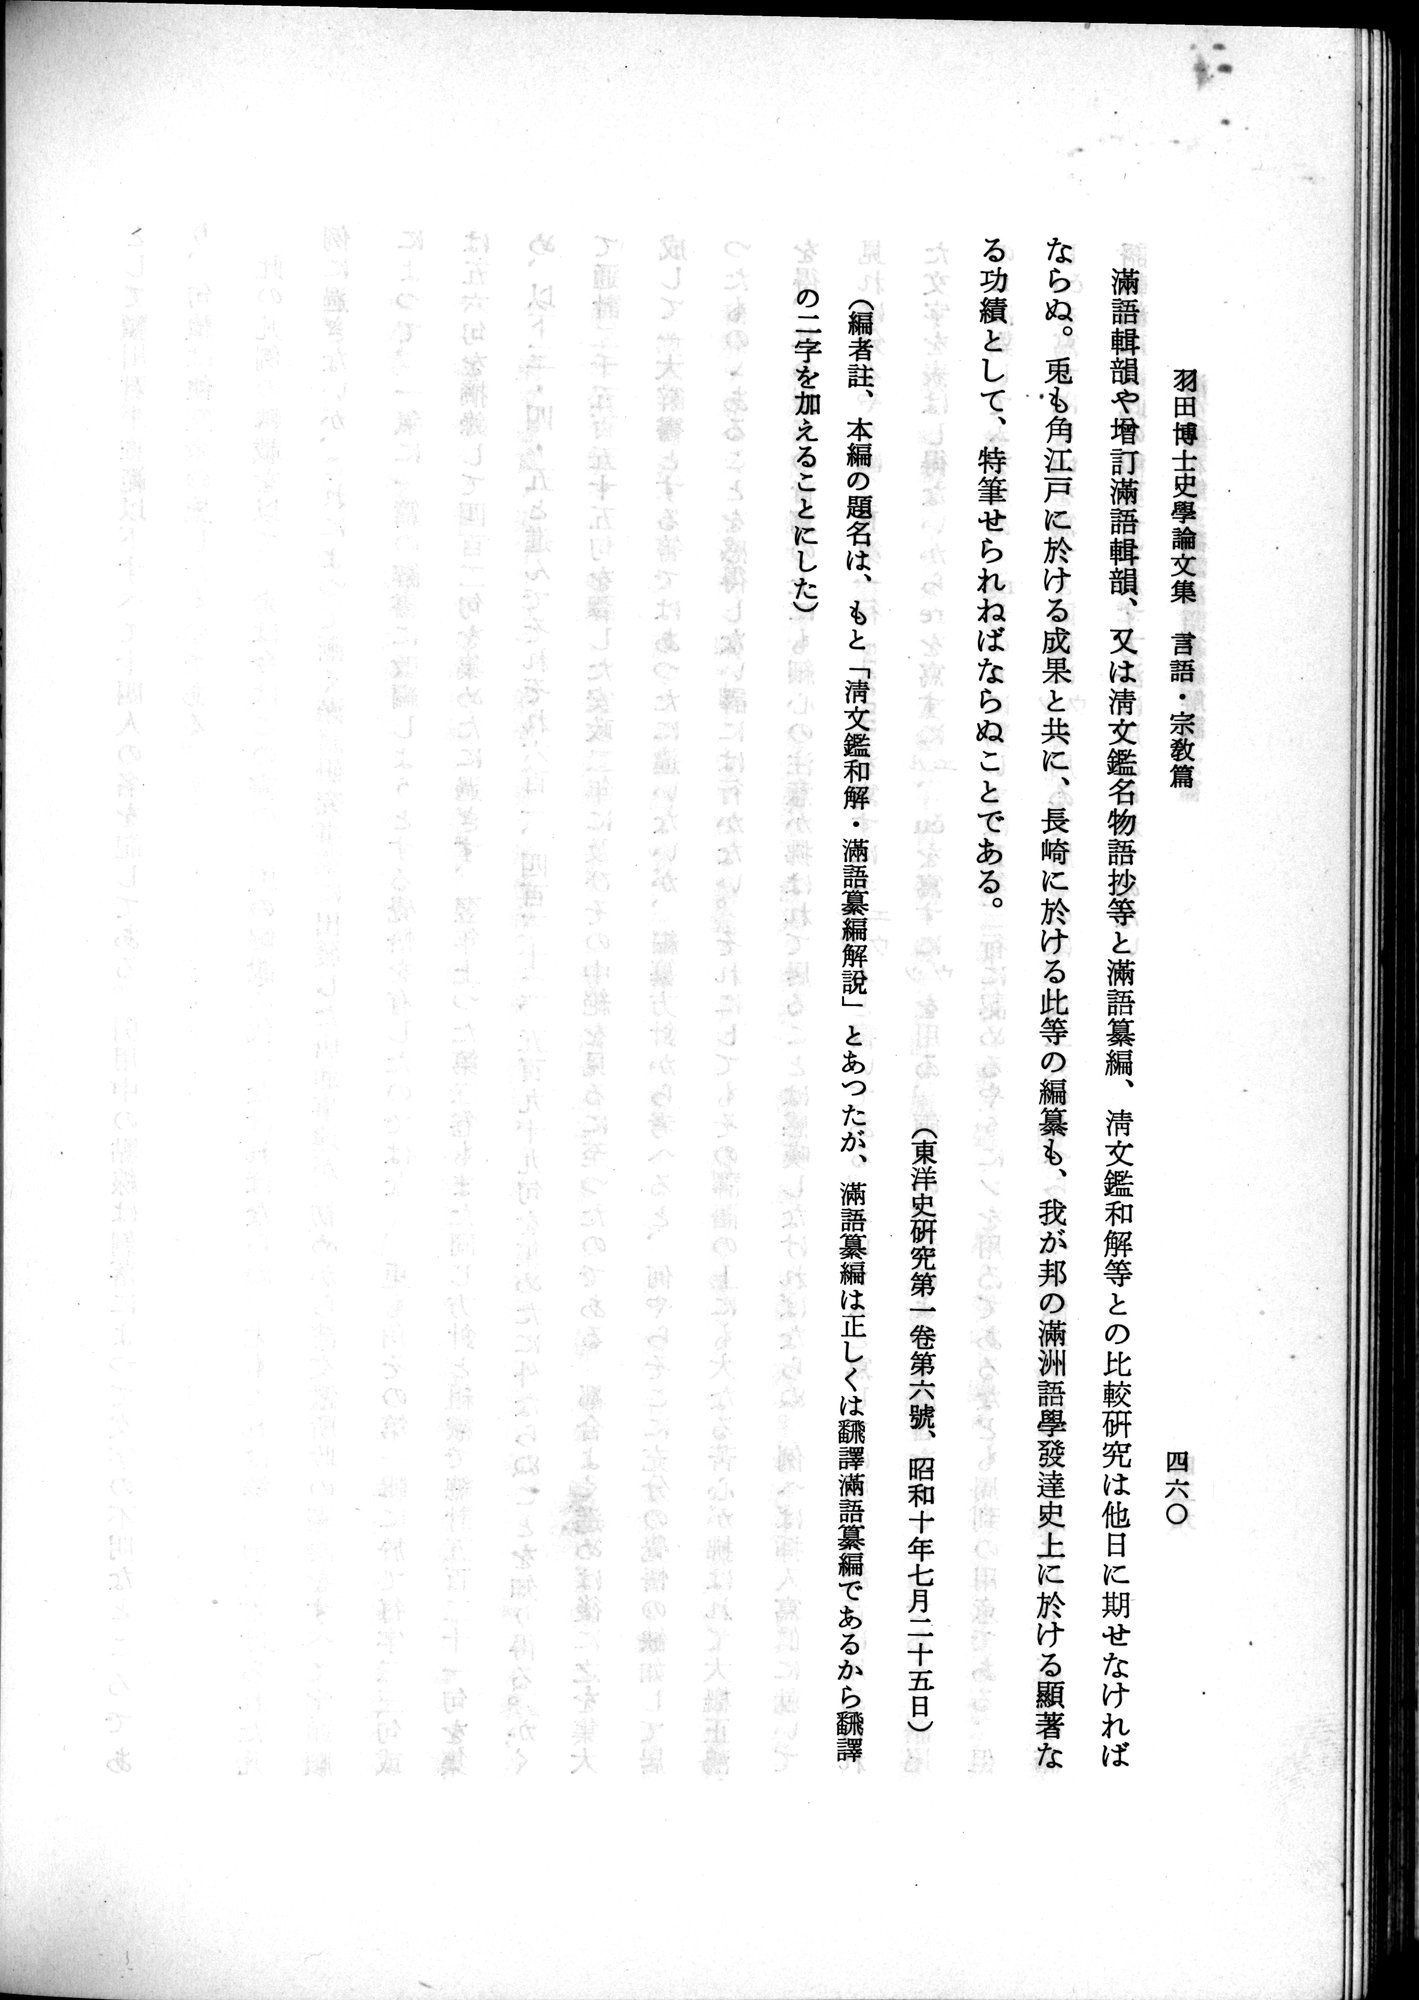 羽田博士史学論文集 : vol.2 / Page 522 (Grayscale High Resolution Image)